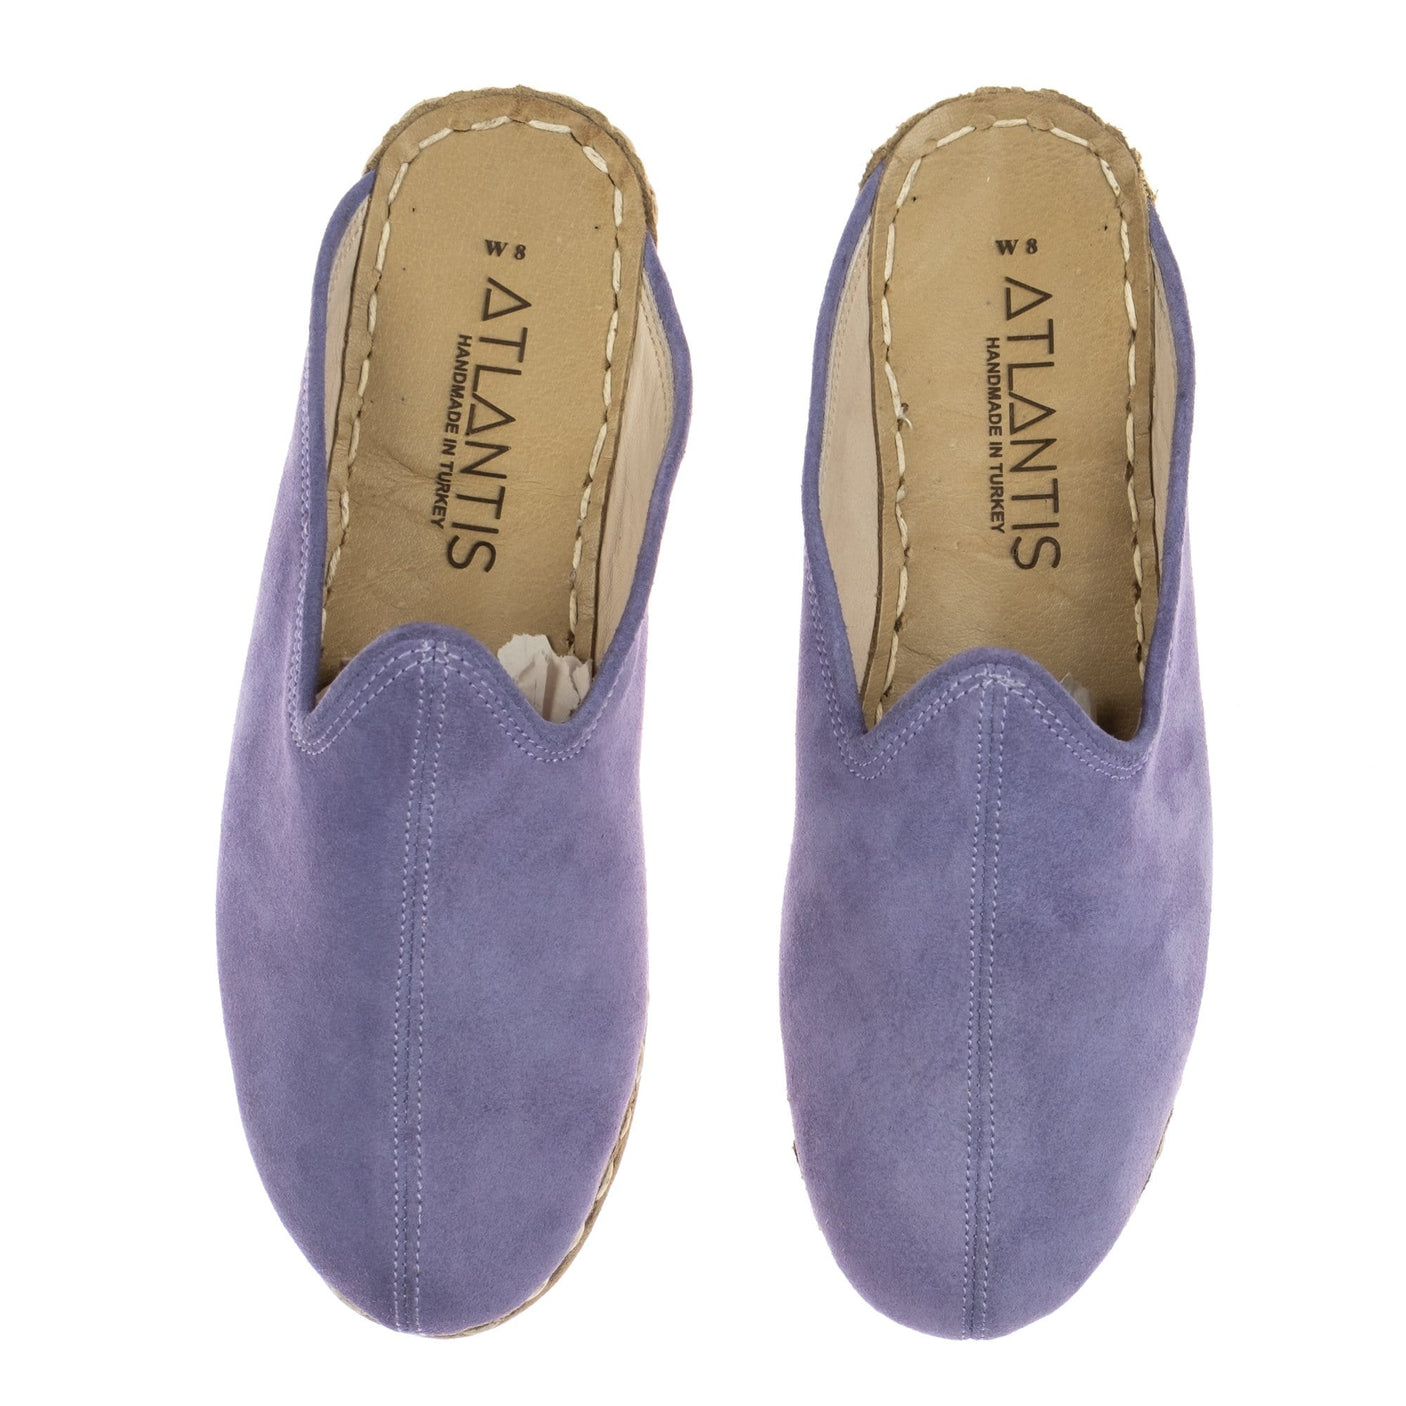 Lavender Slippers - Turkish Slippers for Women & Men : Atlantis Handmade Shoes